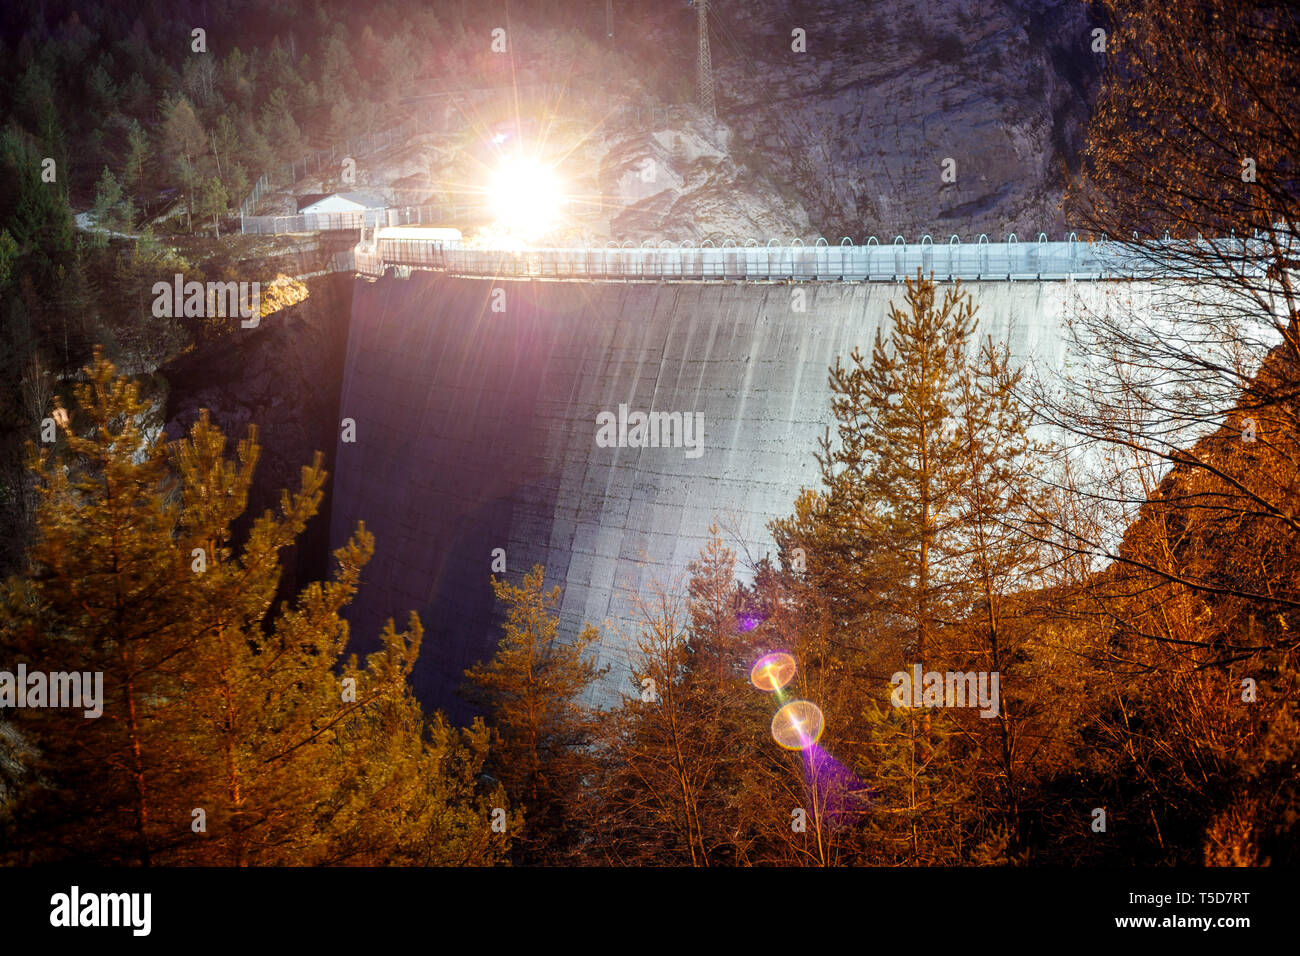 Nuit capture d'un barrage dans les alpes Banque D'Images